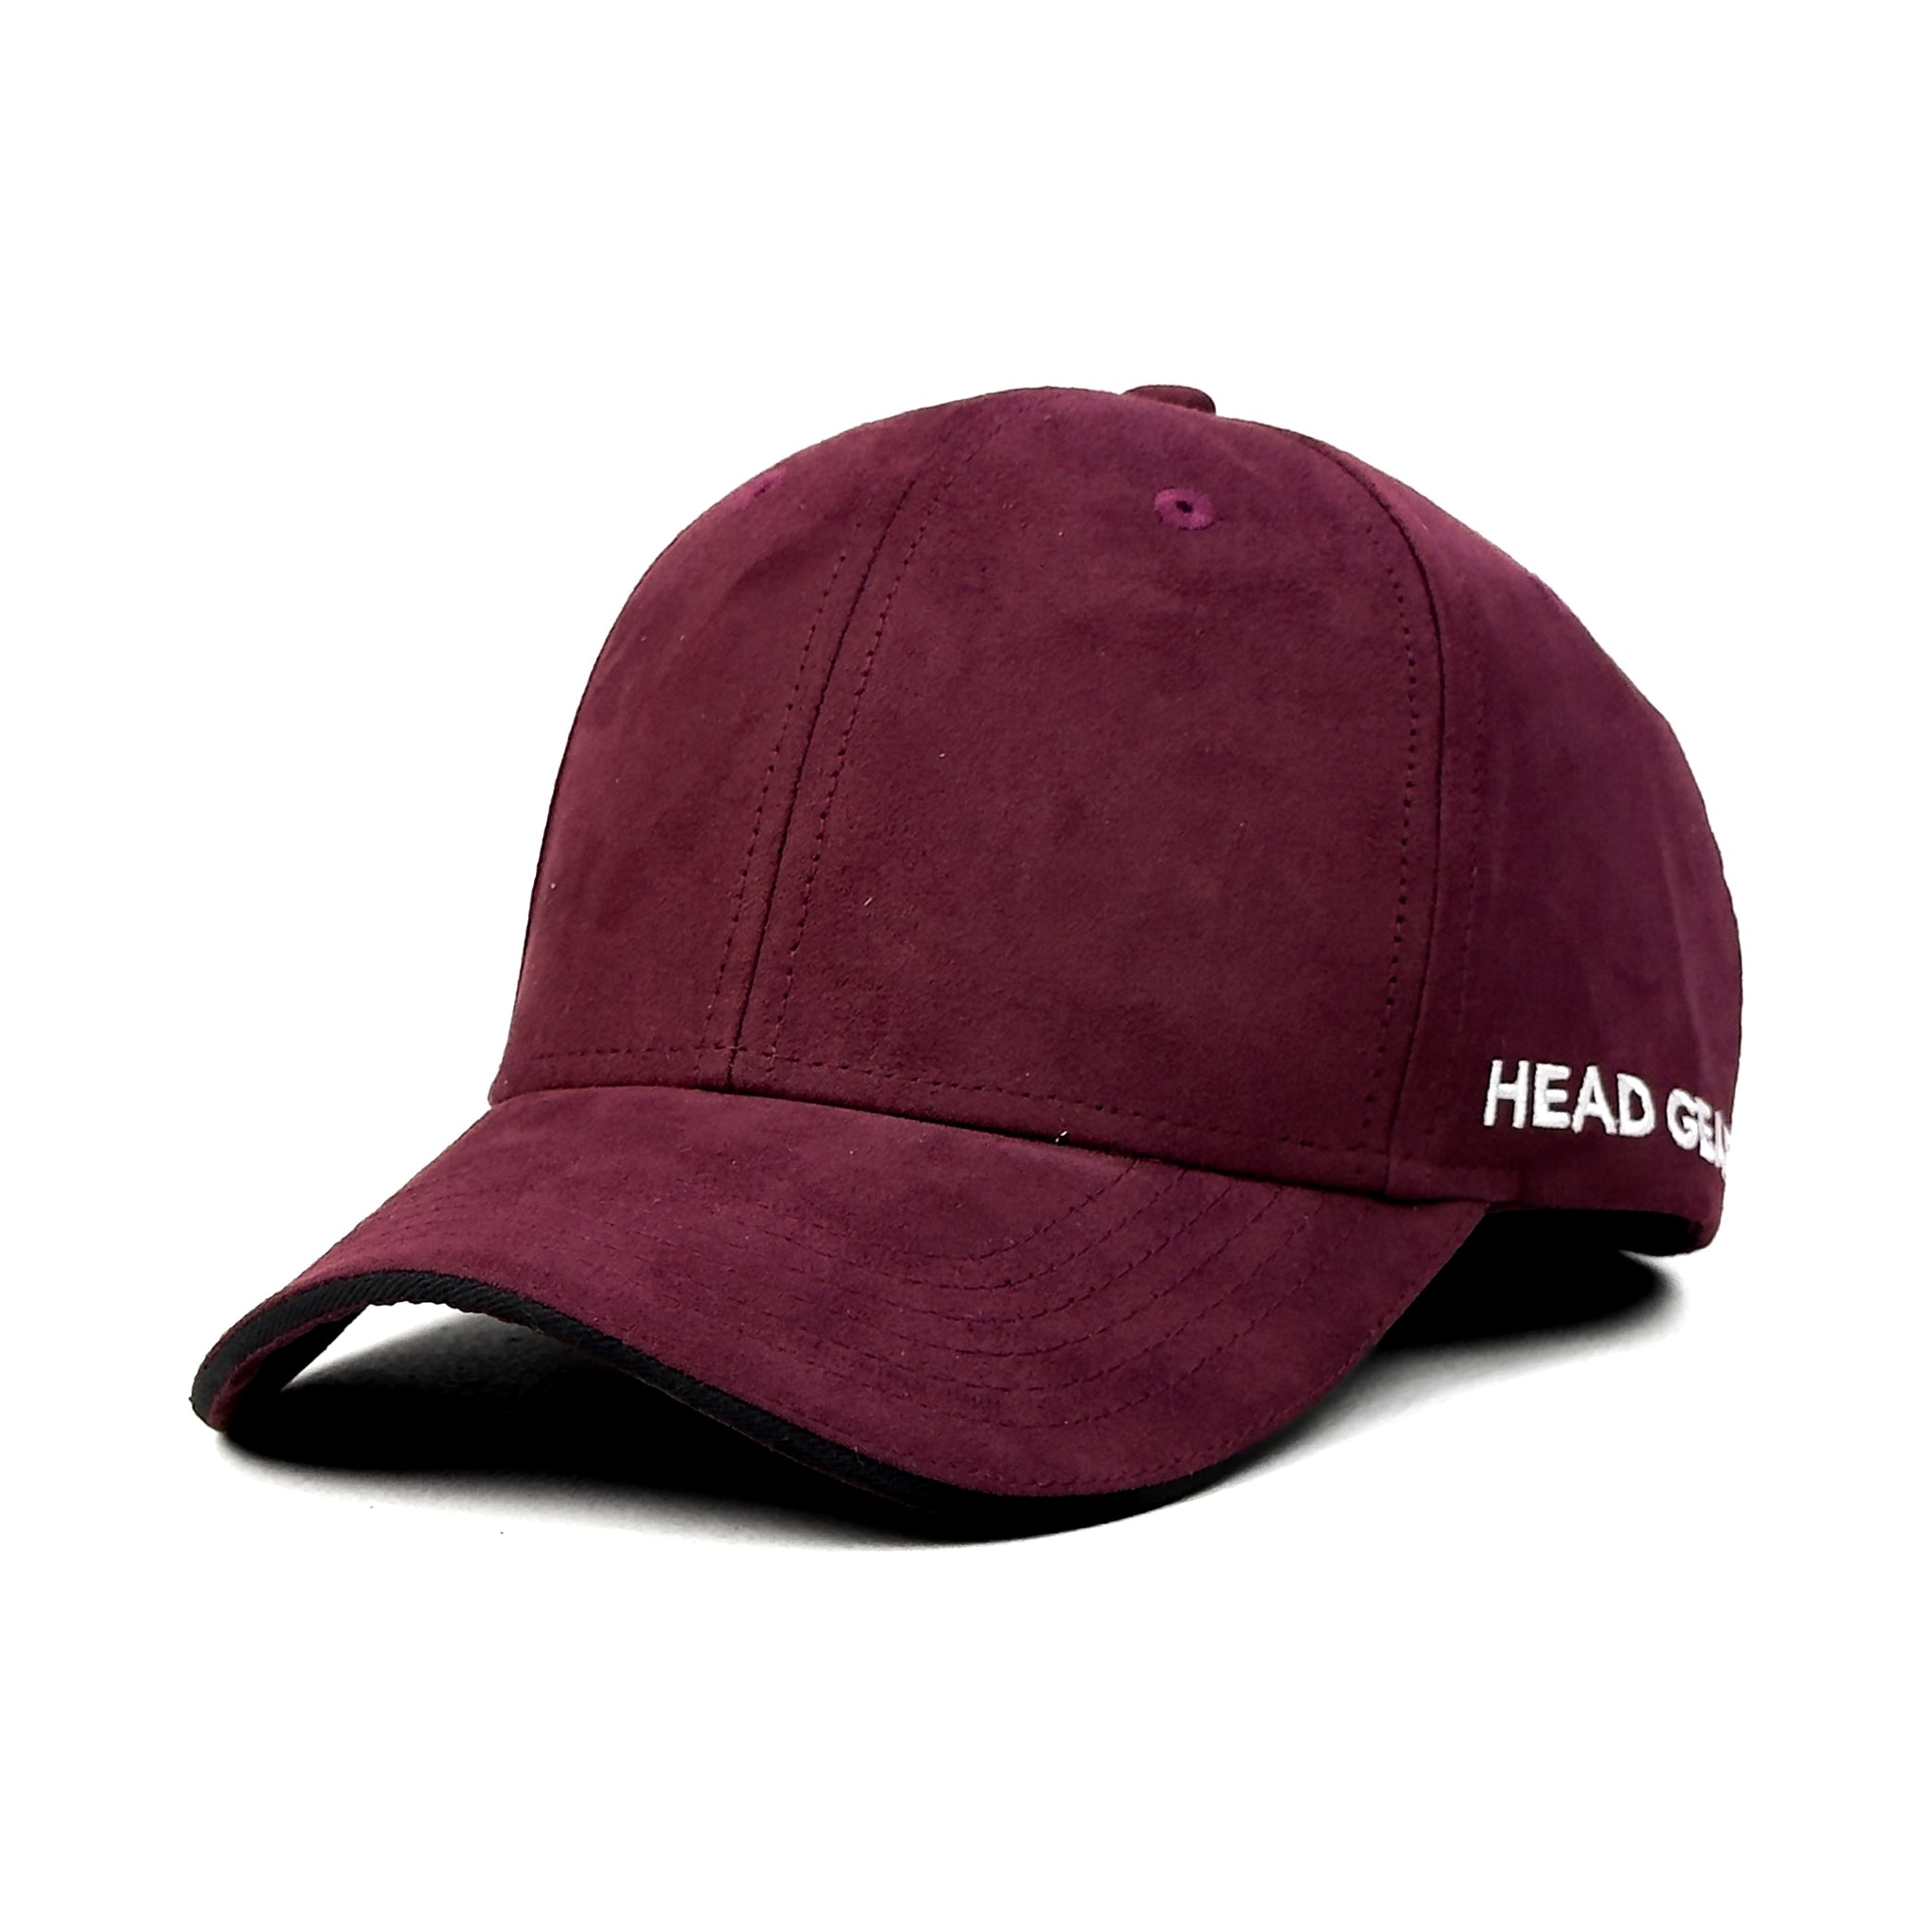 HEAD GEAR FEARLESS SANDWICH CAP